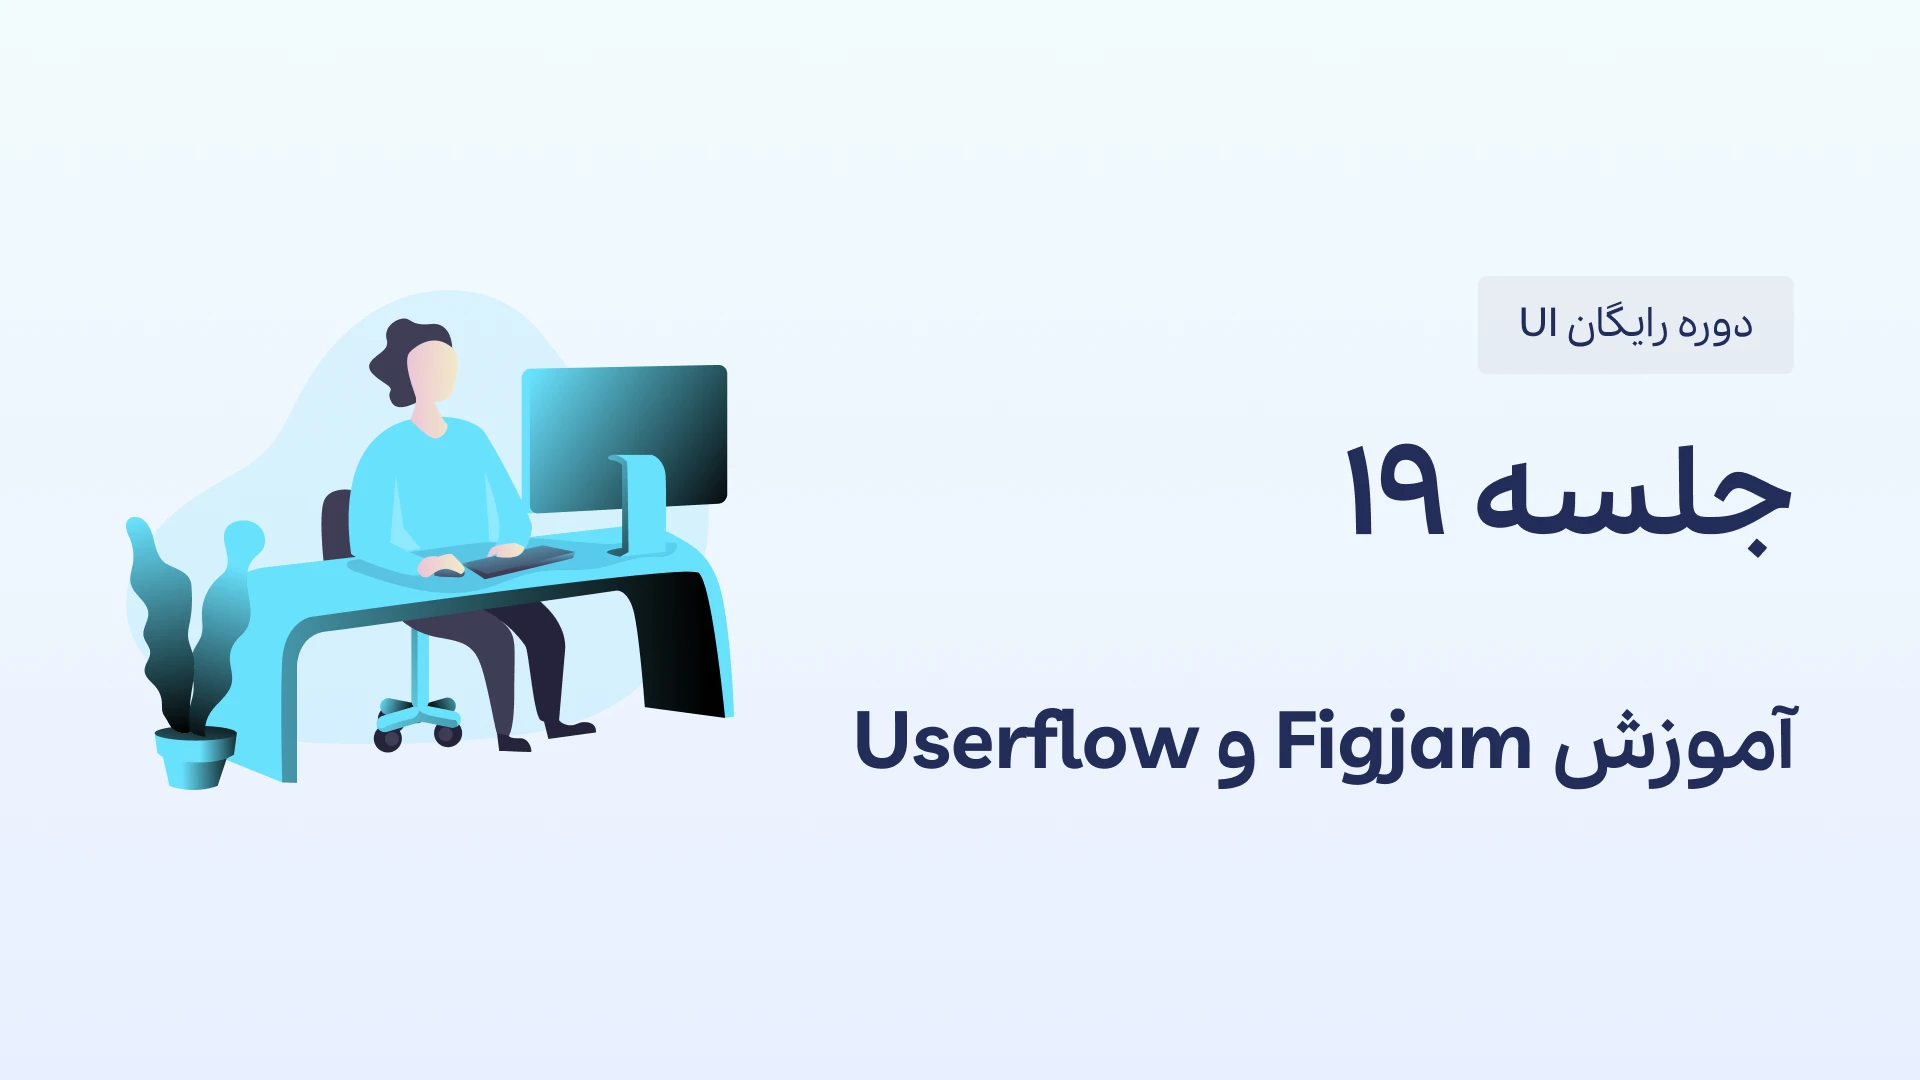 آموزش figjam و طراحی Userflow